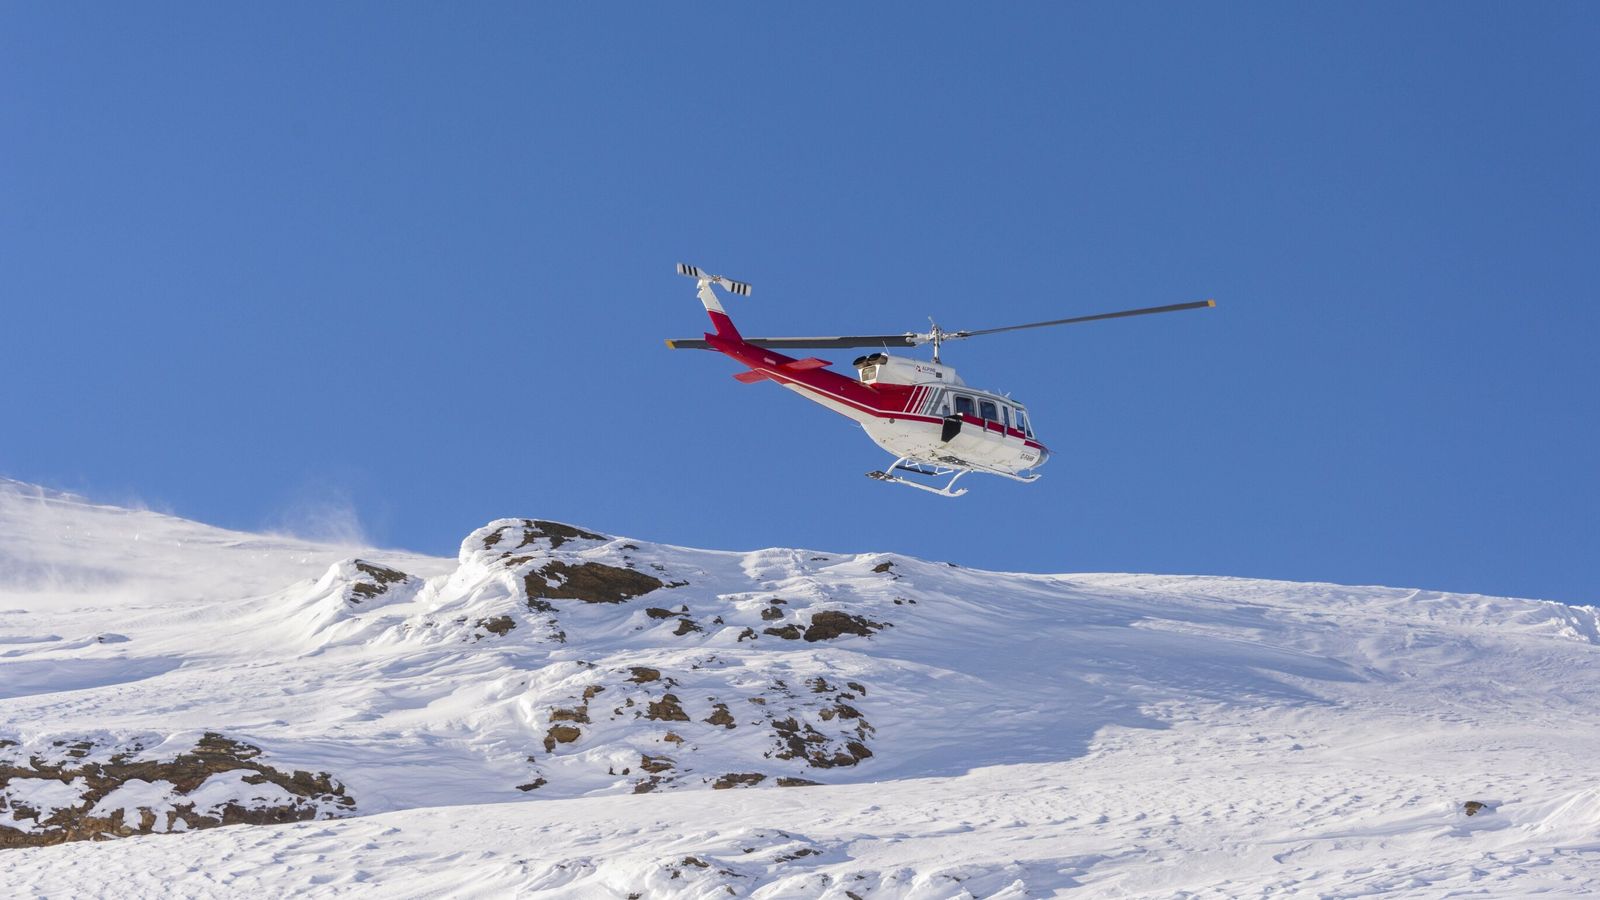 Хеликоптерът превозваше група скиори в понеделник и падна близо до